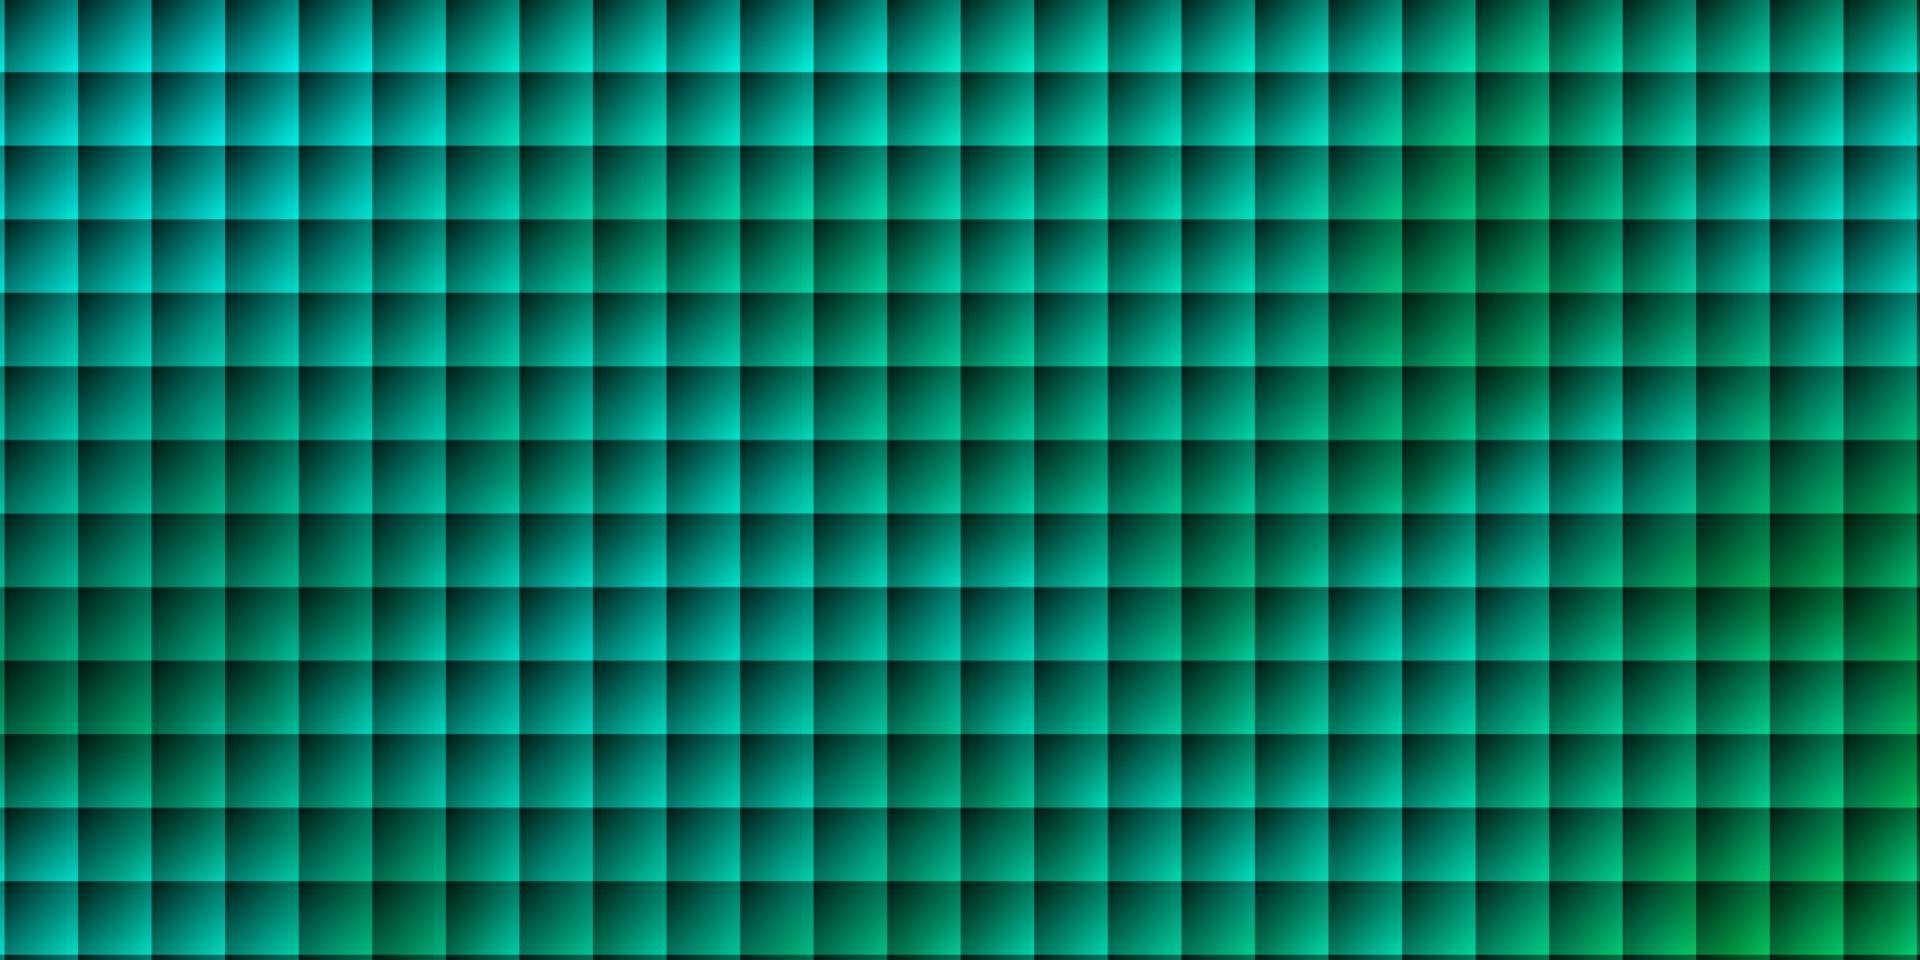 ljusgrön vektorlayout med linjer, rektanglar. vektor